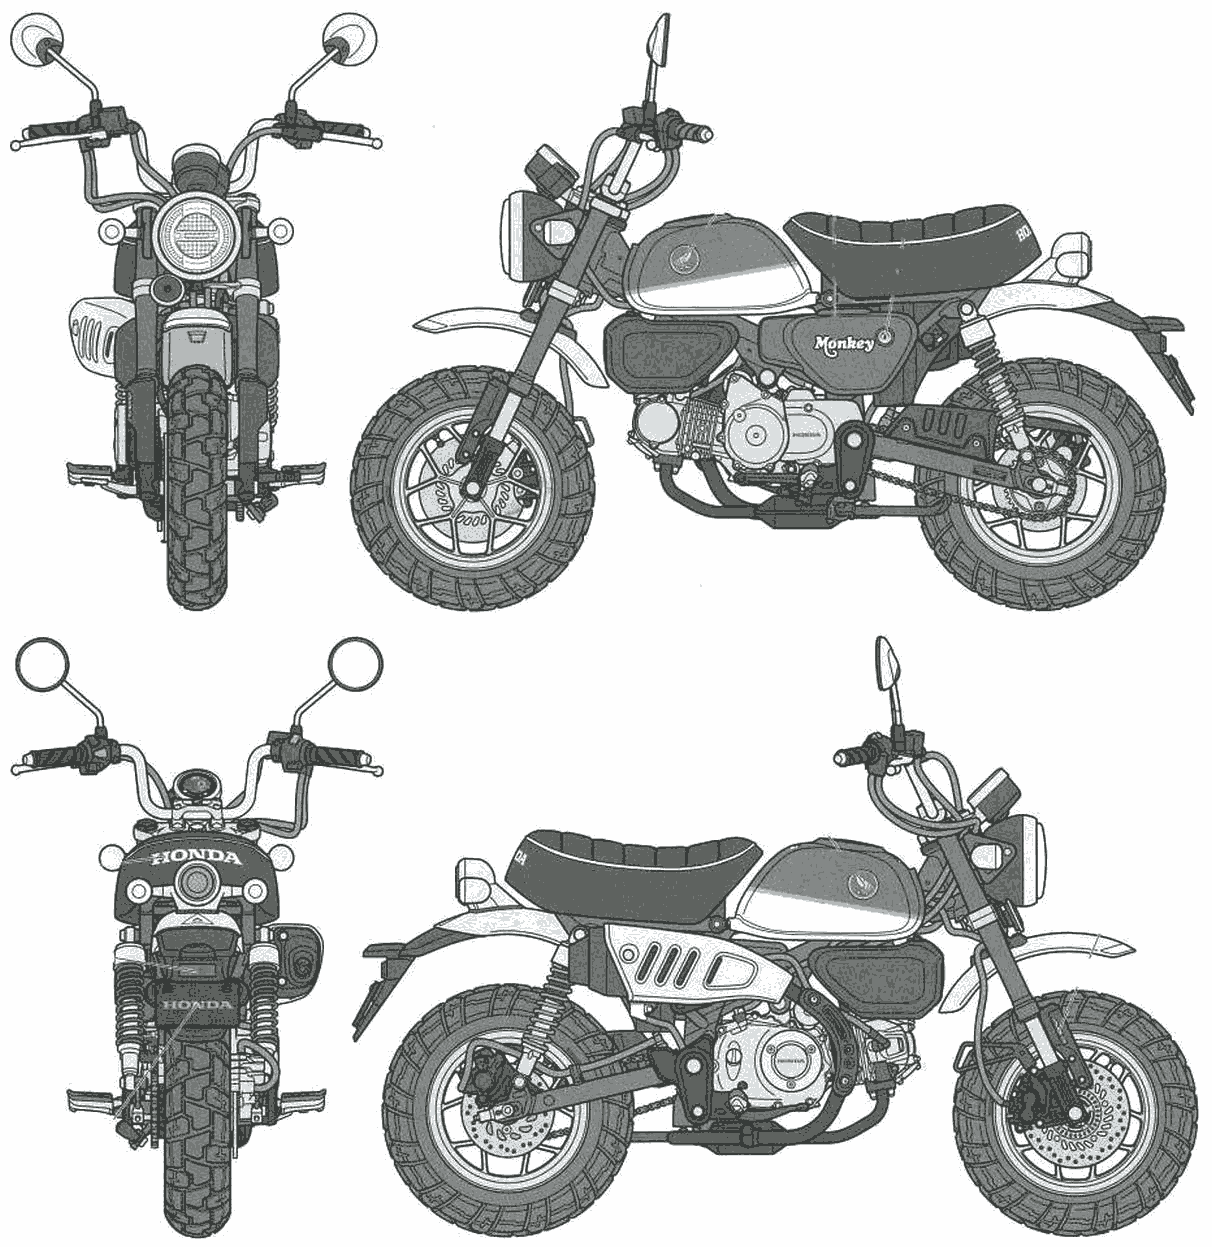 Honda Monkey 125 blueprint